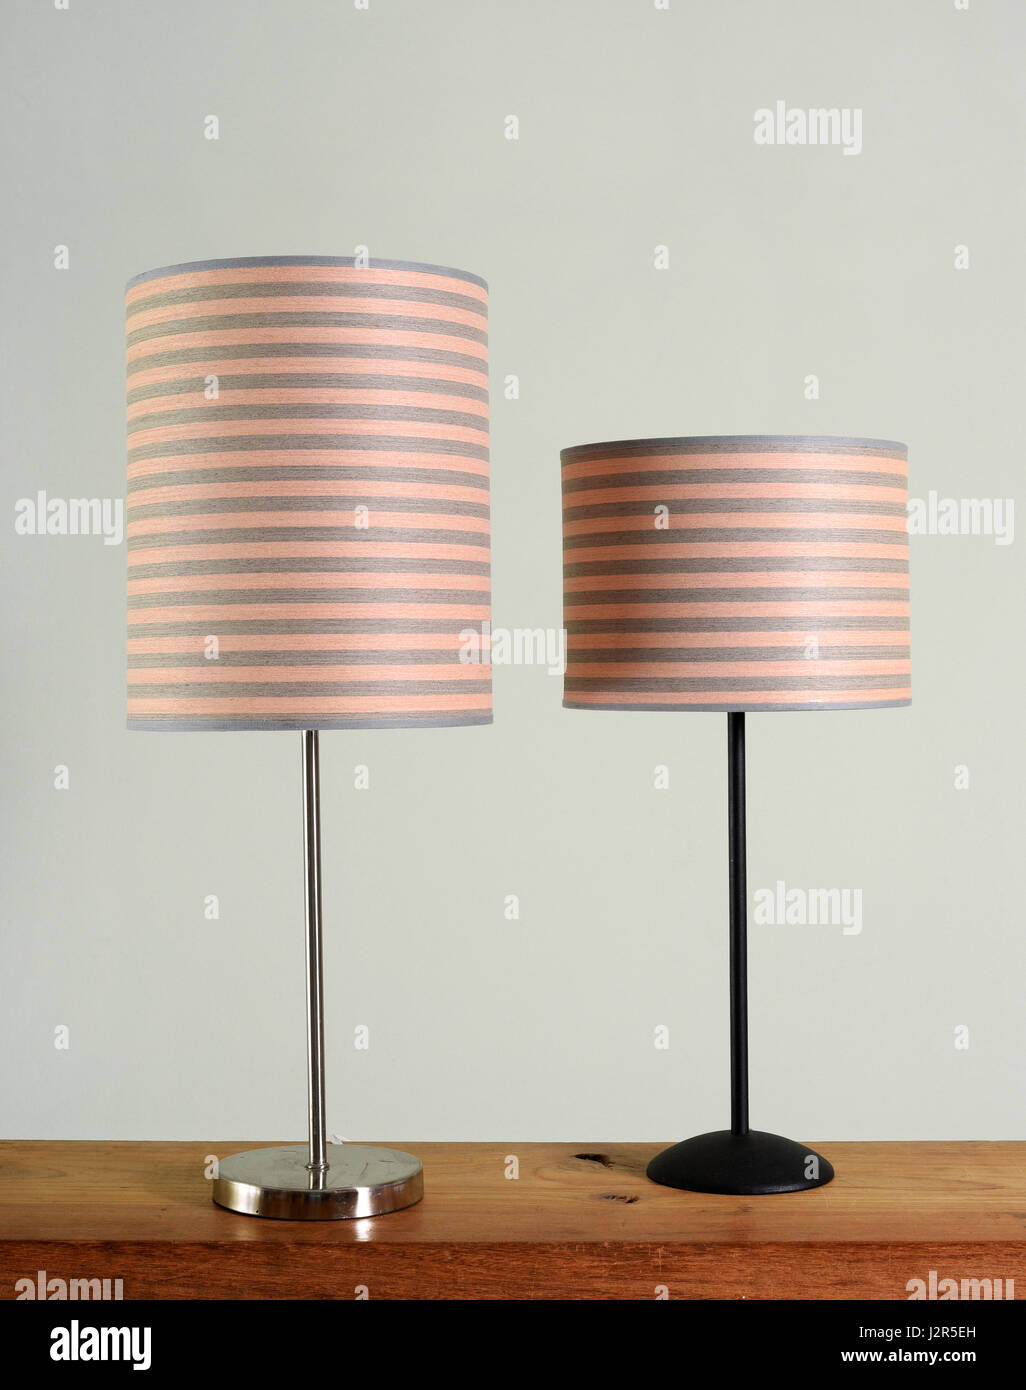 Due diversi stili di lampade in metallo con striping corrispondenti sfumature cilindrica in piedi su un tavolo di legno contro un muro verde Foto Stock